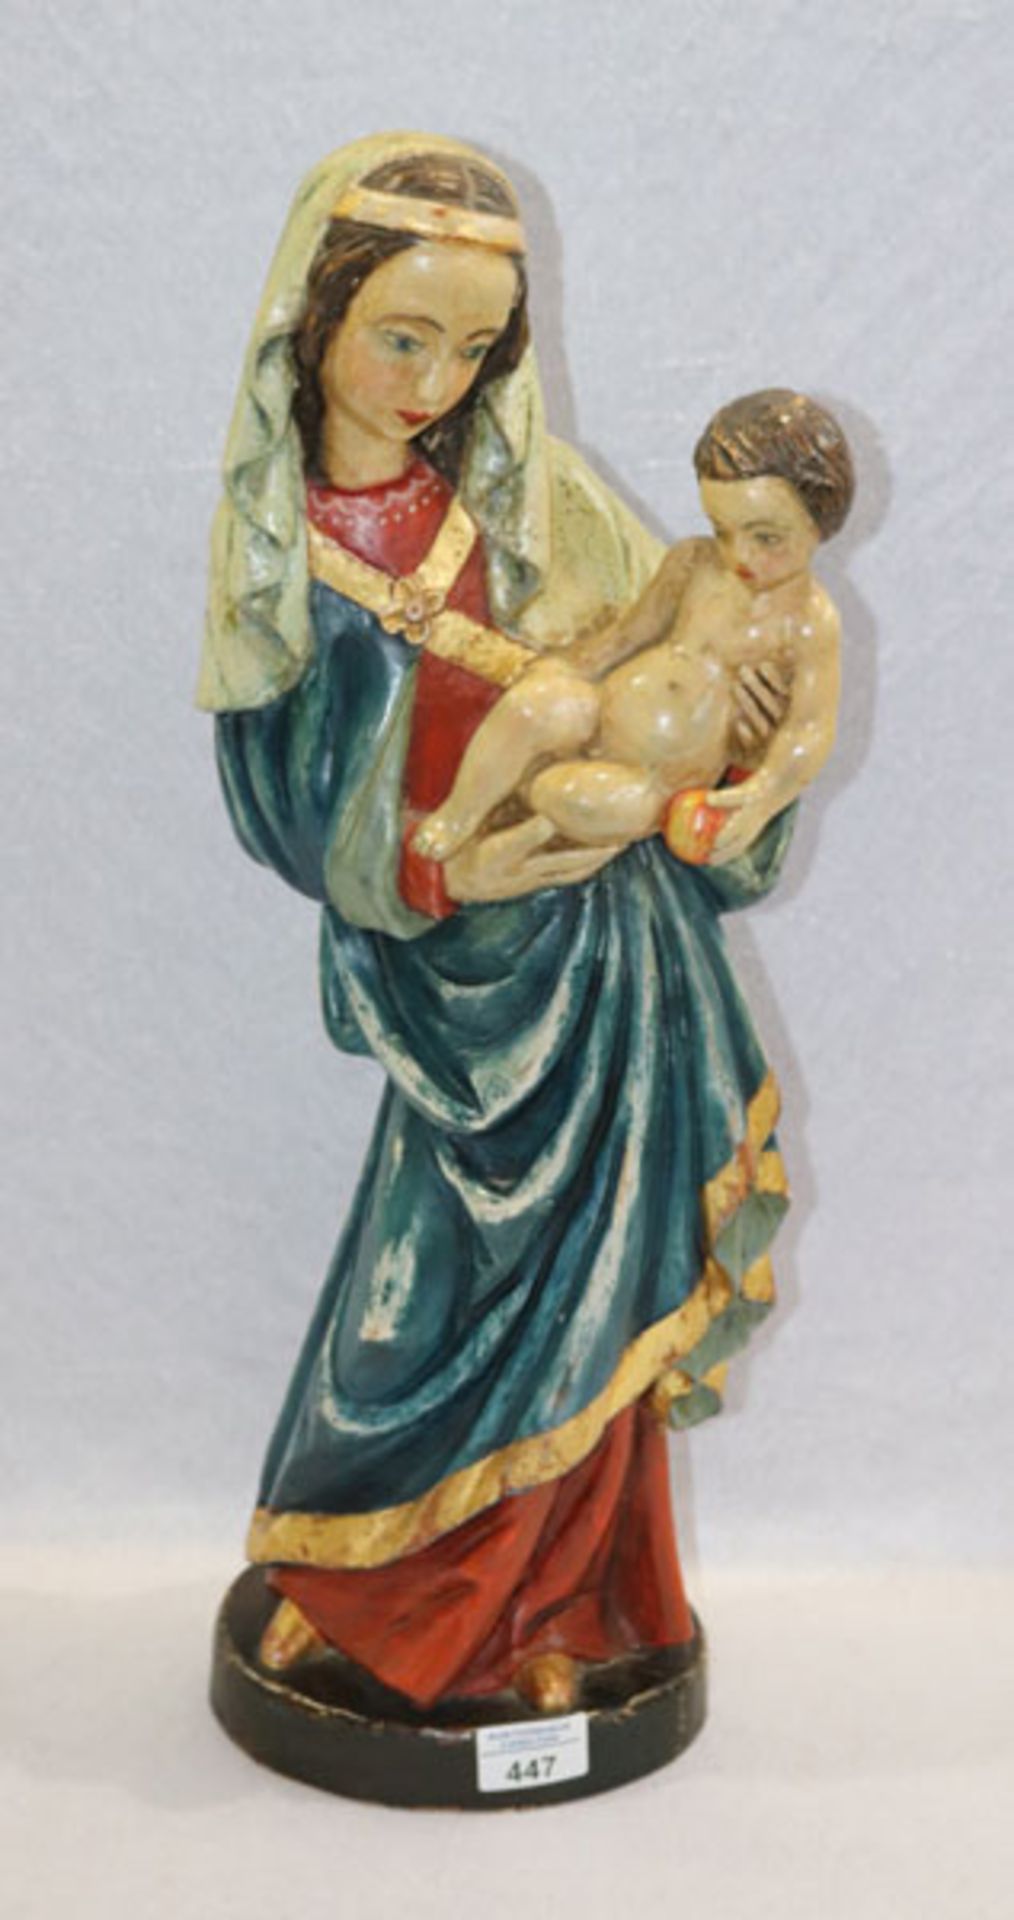 Holz Figurenskulptur 'Maria mit Kind', farbig gefaßt, am Boden monogrammiert JD 1986, H 56 cm, B